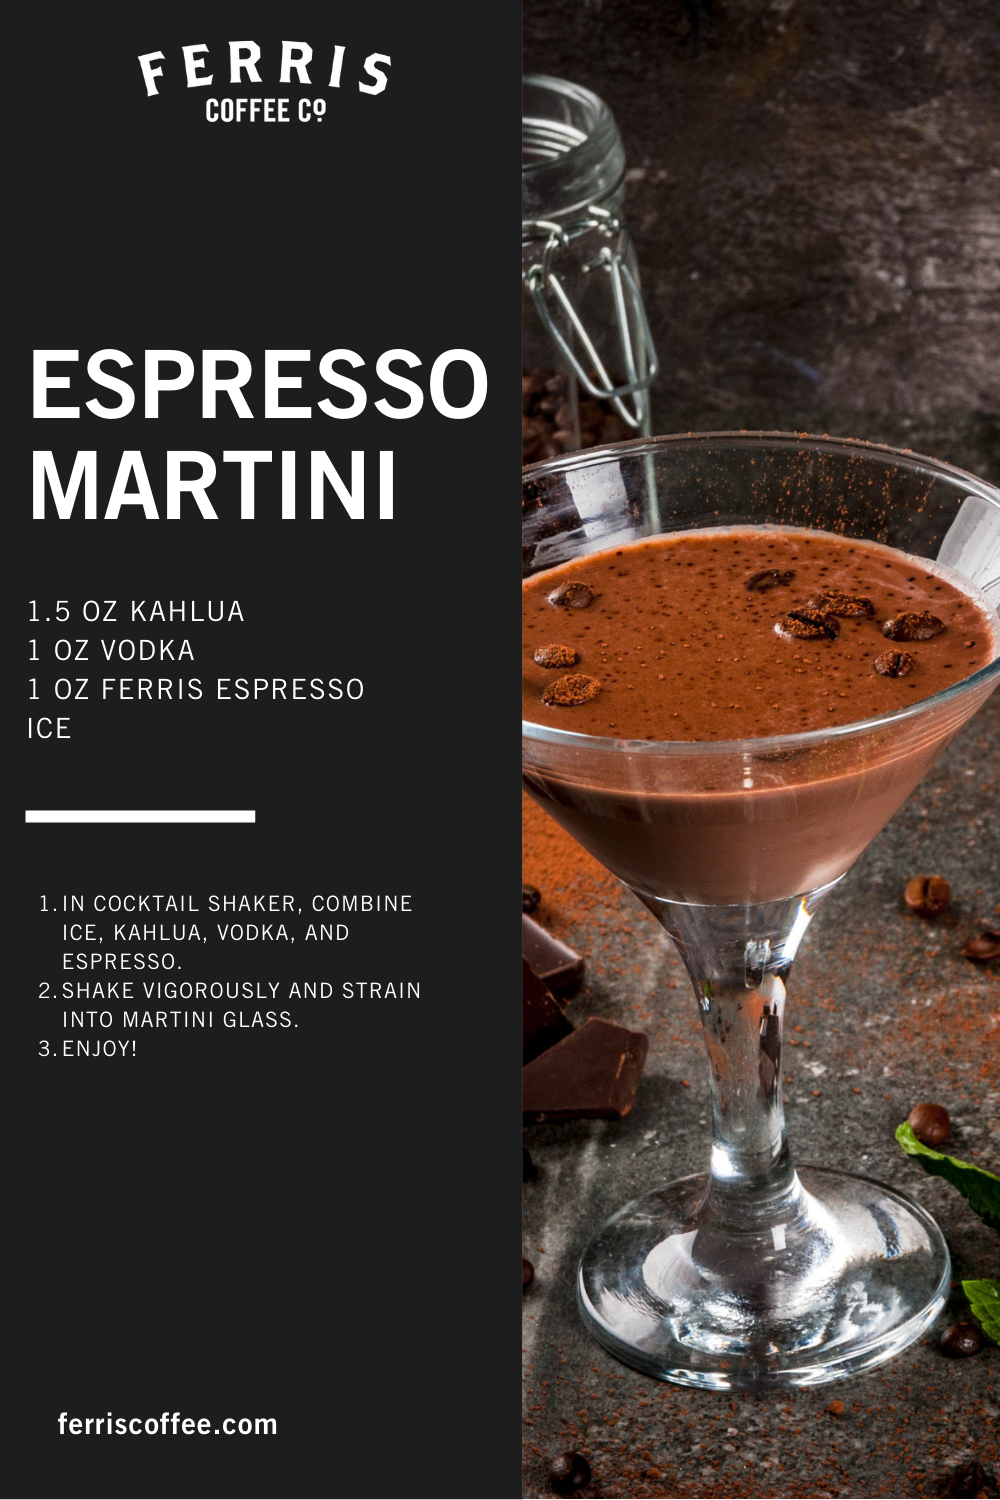 espresso martini drink recipe with ferris coffee